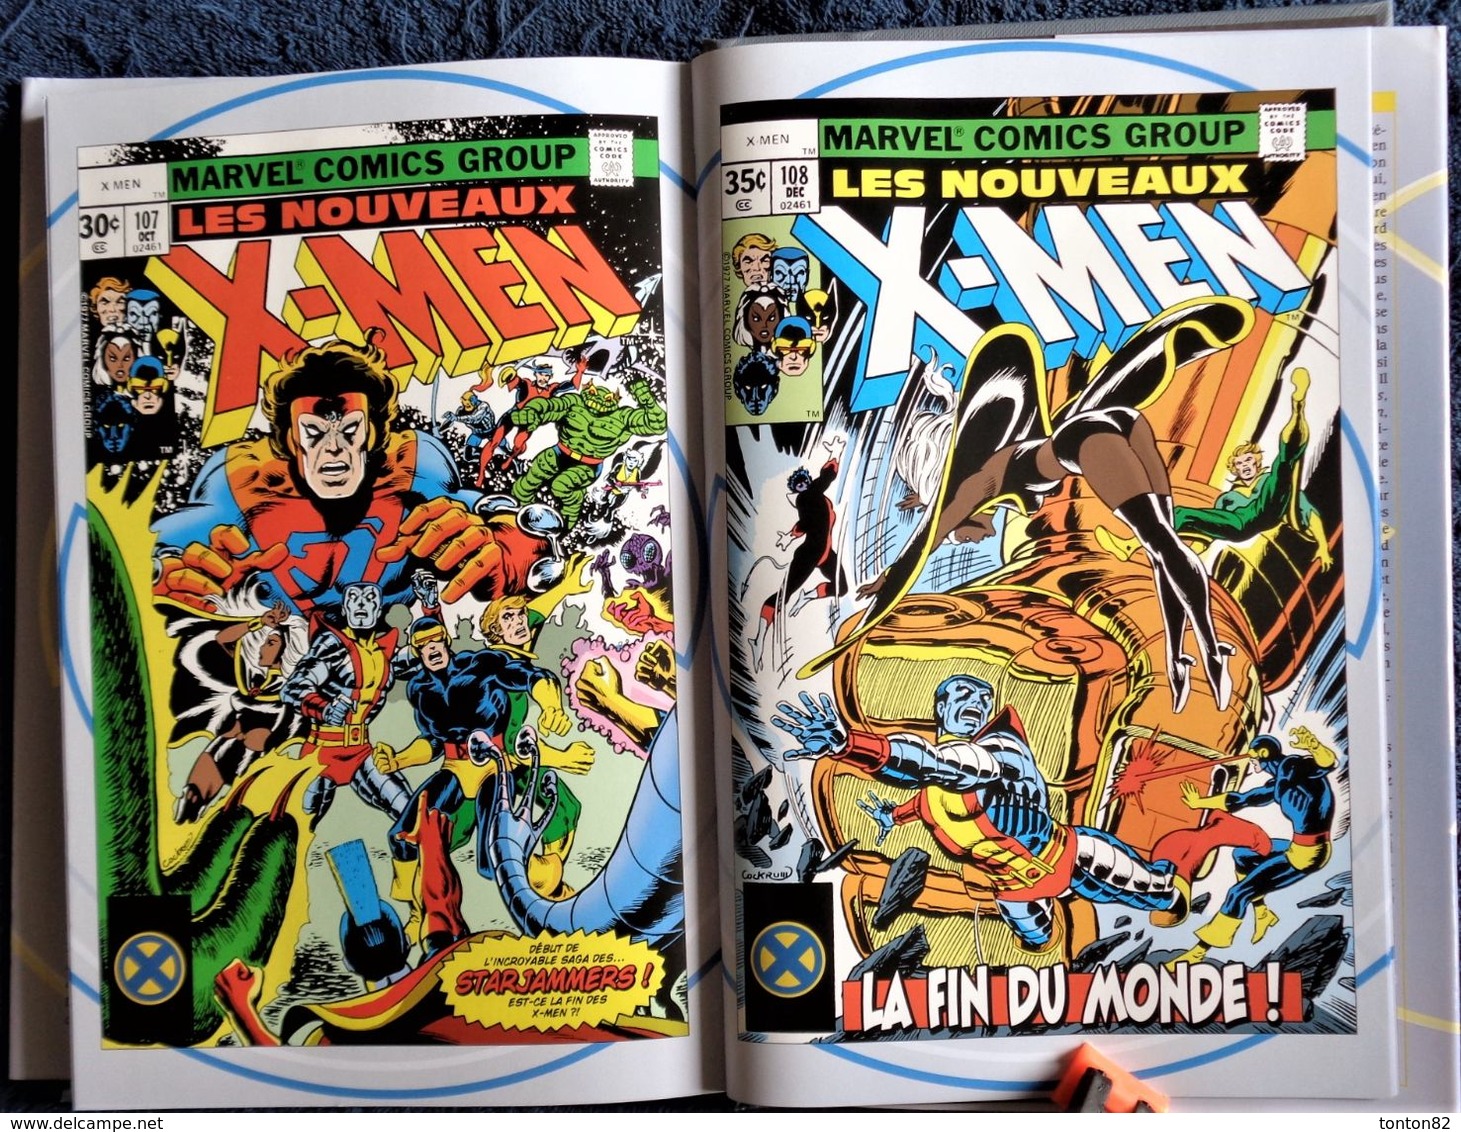 Claremont - Byrne - X-MEN - 1977 - 1978- L' Intégrale - MARVEL - Panini Comics .